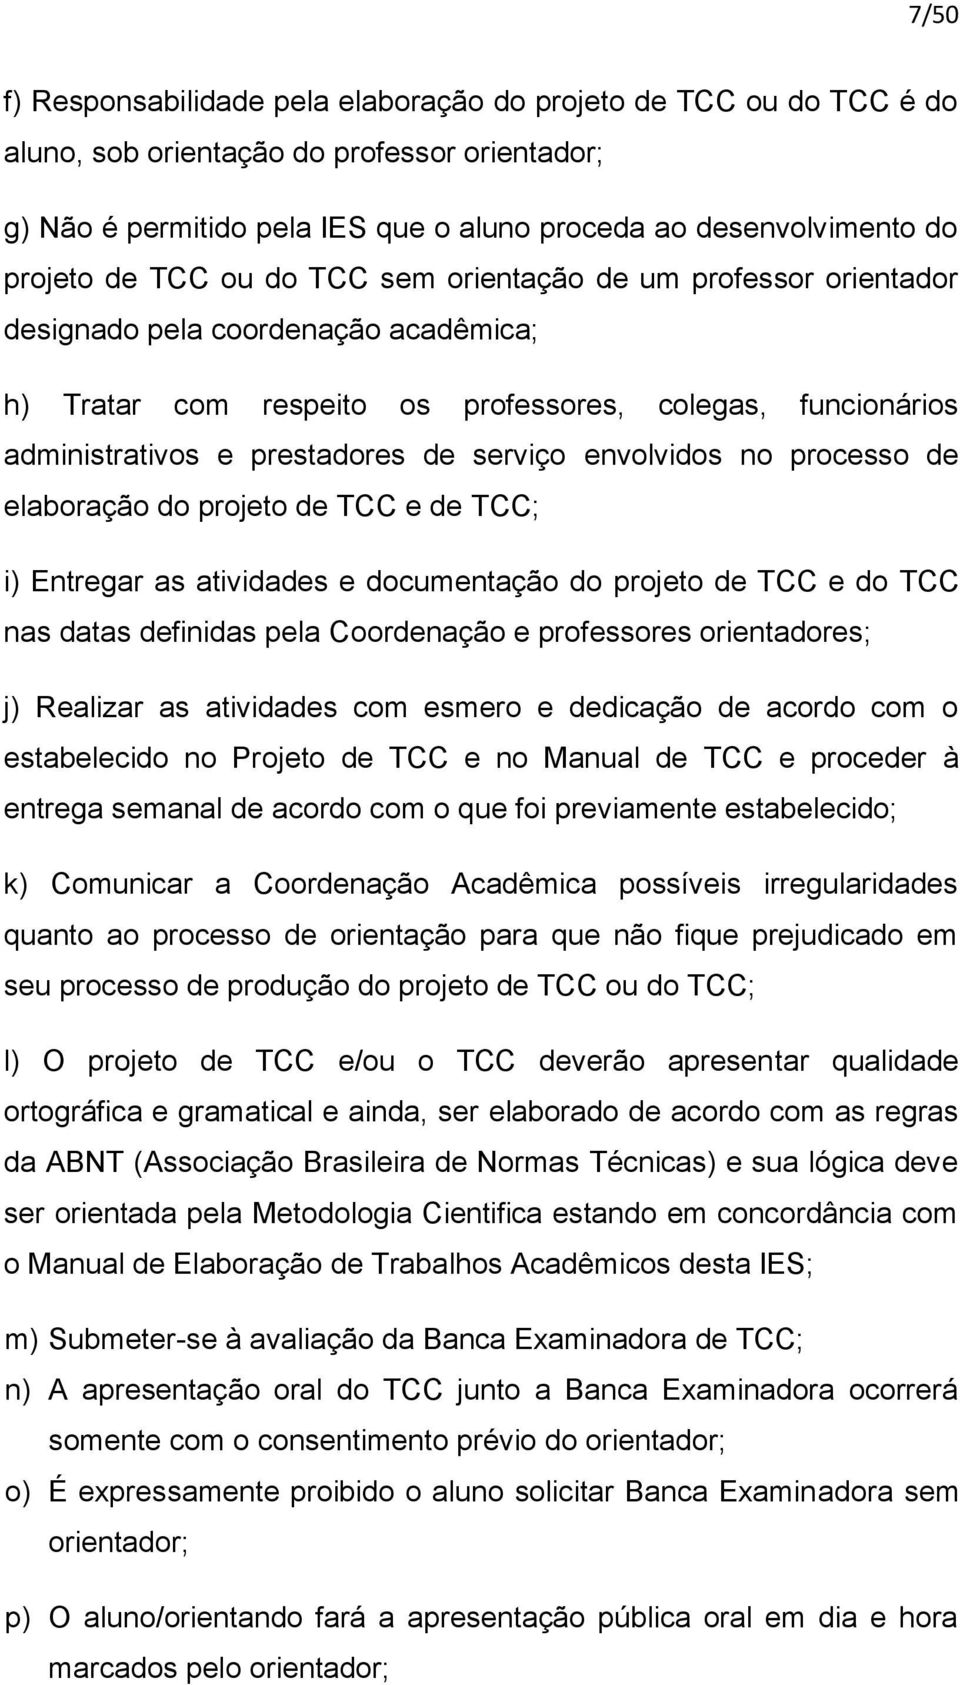 envolvidos no processo de elaboração do projeto de TCC e de TCC; i) Entregar as atividades e documentação do projeto de TCC e do TCC nas datas definidas pela Coordenação e professores orientadores;